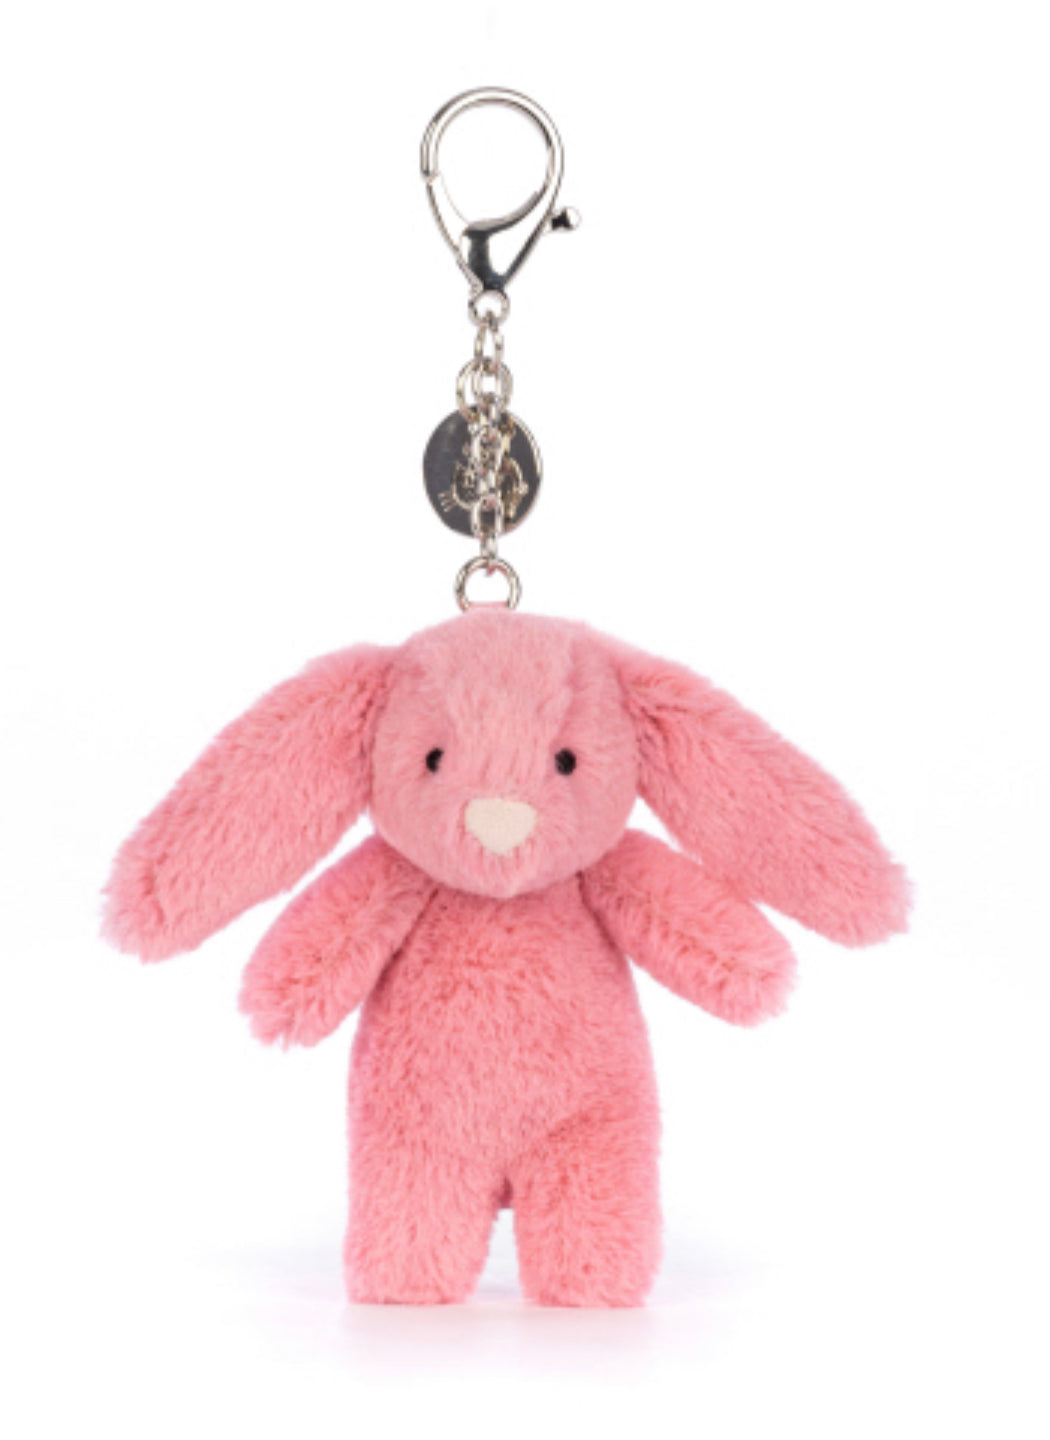 Bashful Bunny Pink Bag Charm